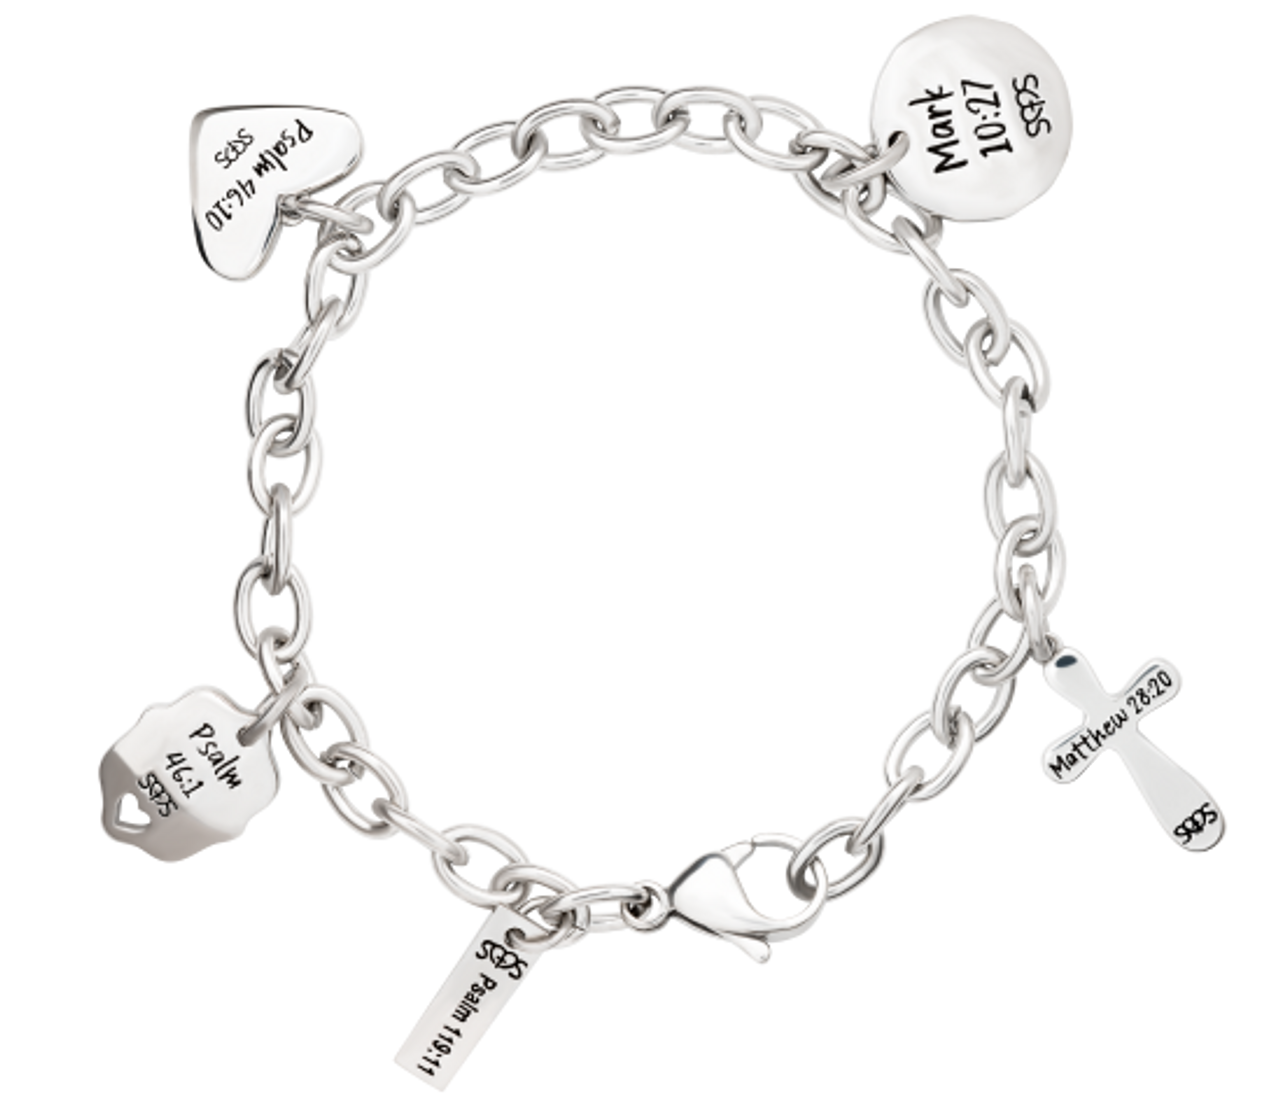 Stainless Steel Charm Bracelet | Women's Charm Bracelet